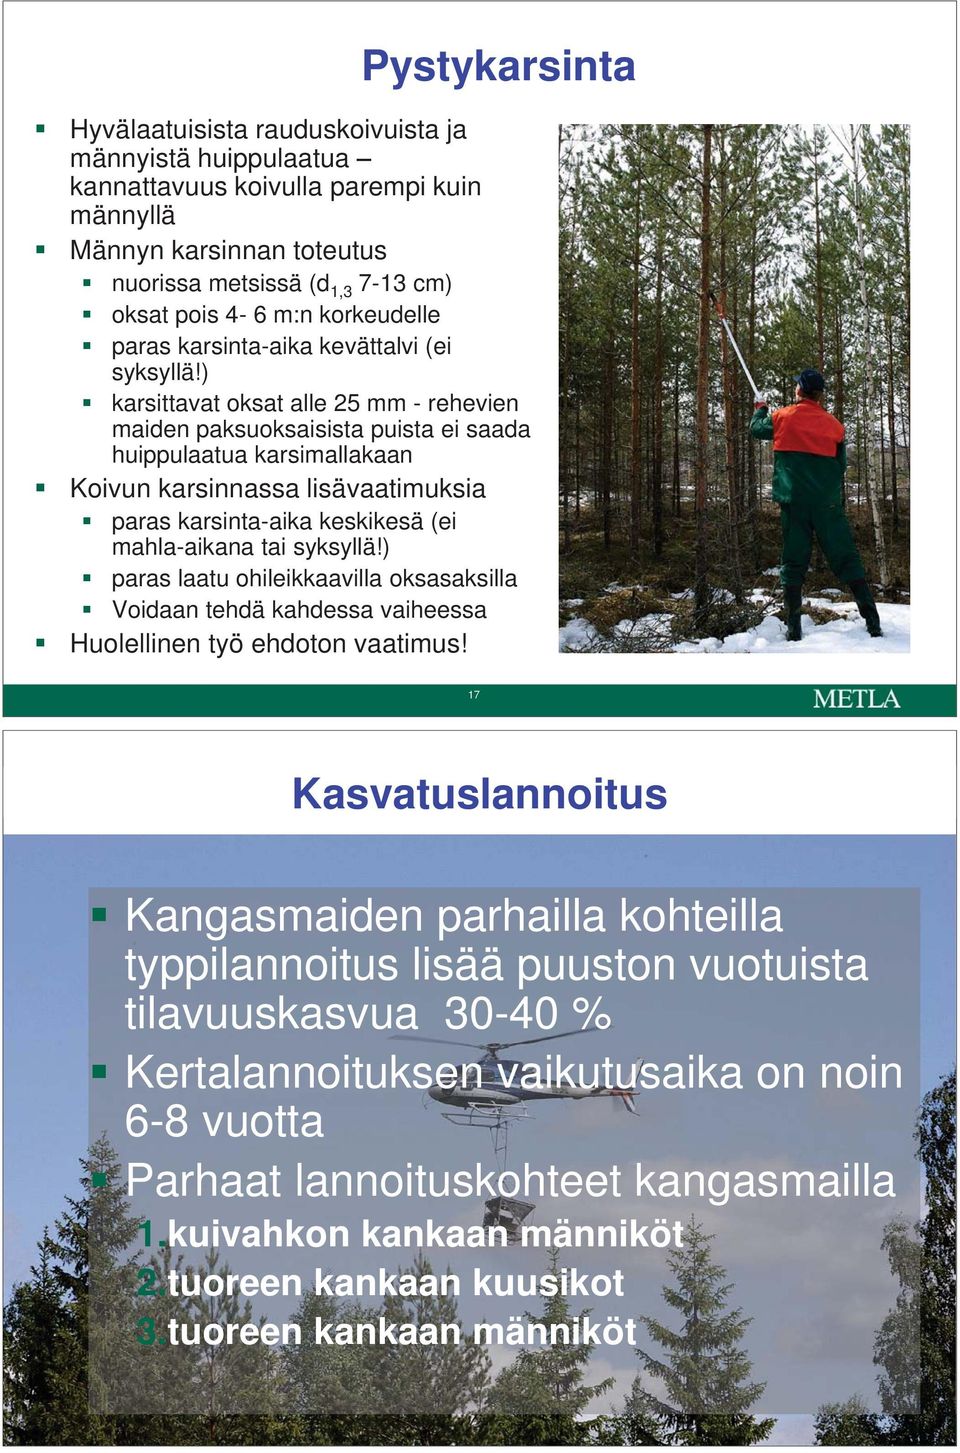 ) karsittavat oksat alle 25 mm - rehevien maiden paksuoksaisista puista ei saada huippulaatua karsimallakaan Koivun karsinnassa lisävaatimuksia paras karsinta-aika keskikesä (ei mahla-aikana tai